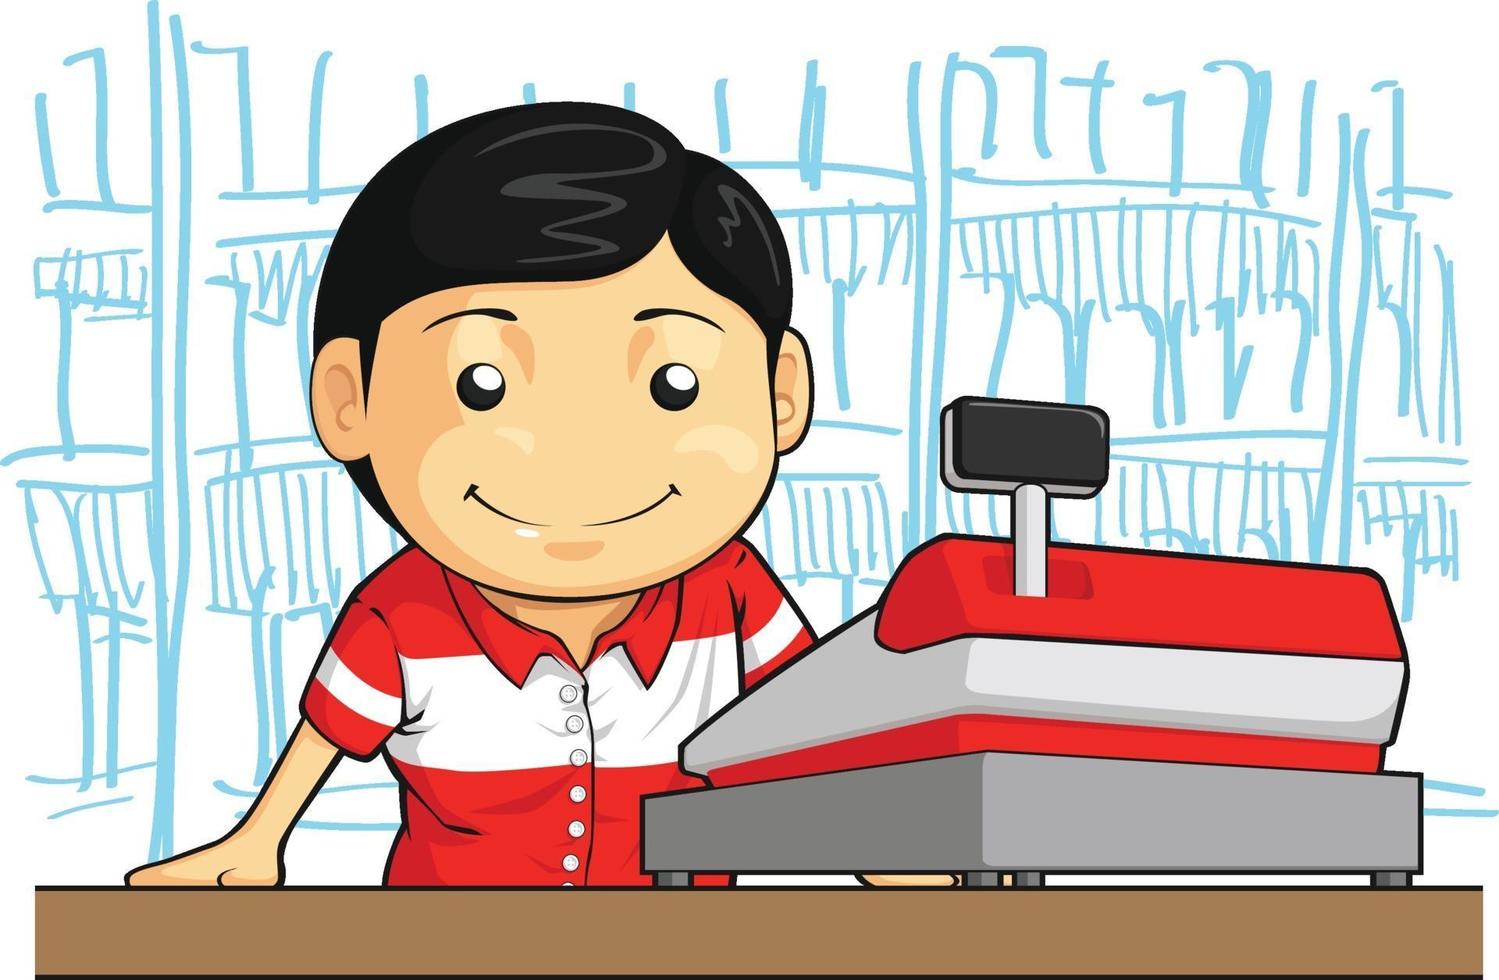 Kassierer Mitarbeiter Store Worker Clerk Cartoon Illustration Zeichnung vektor